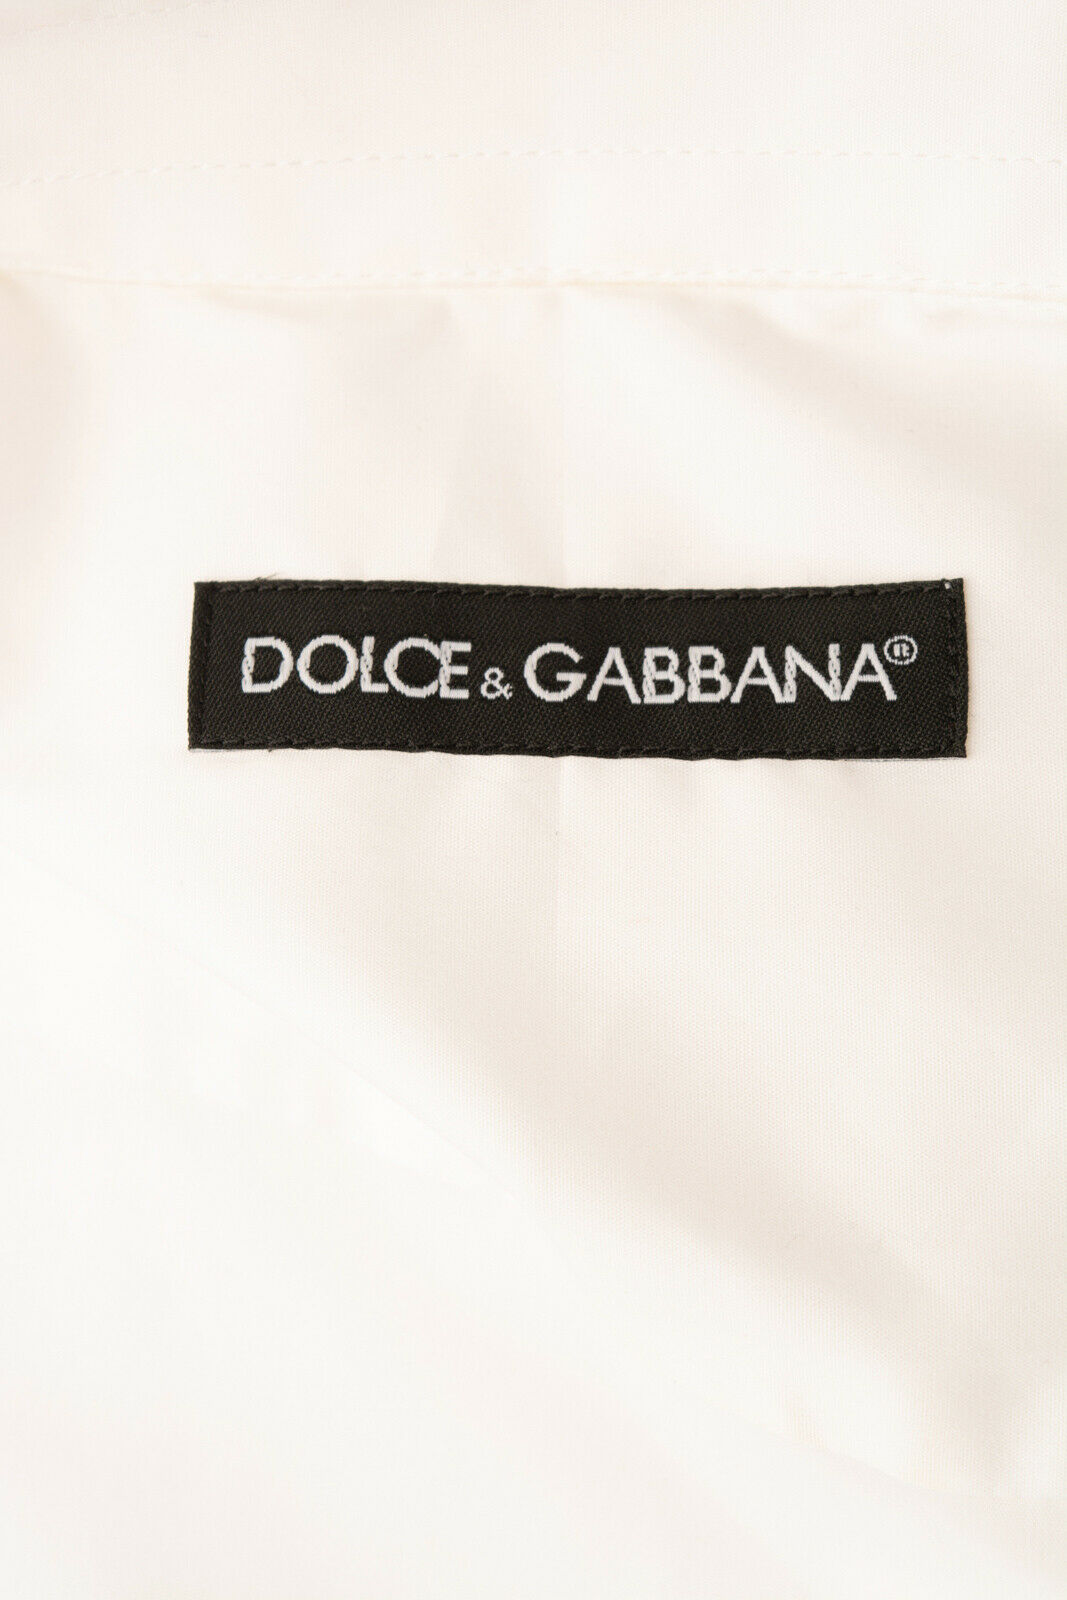 DOLCE & GABBANA Shirt Size M